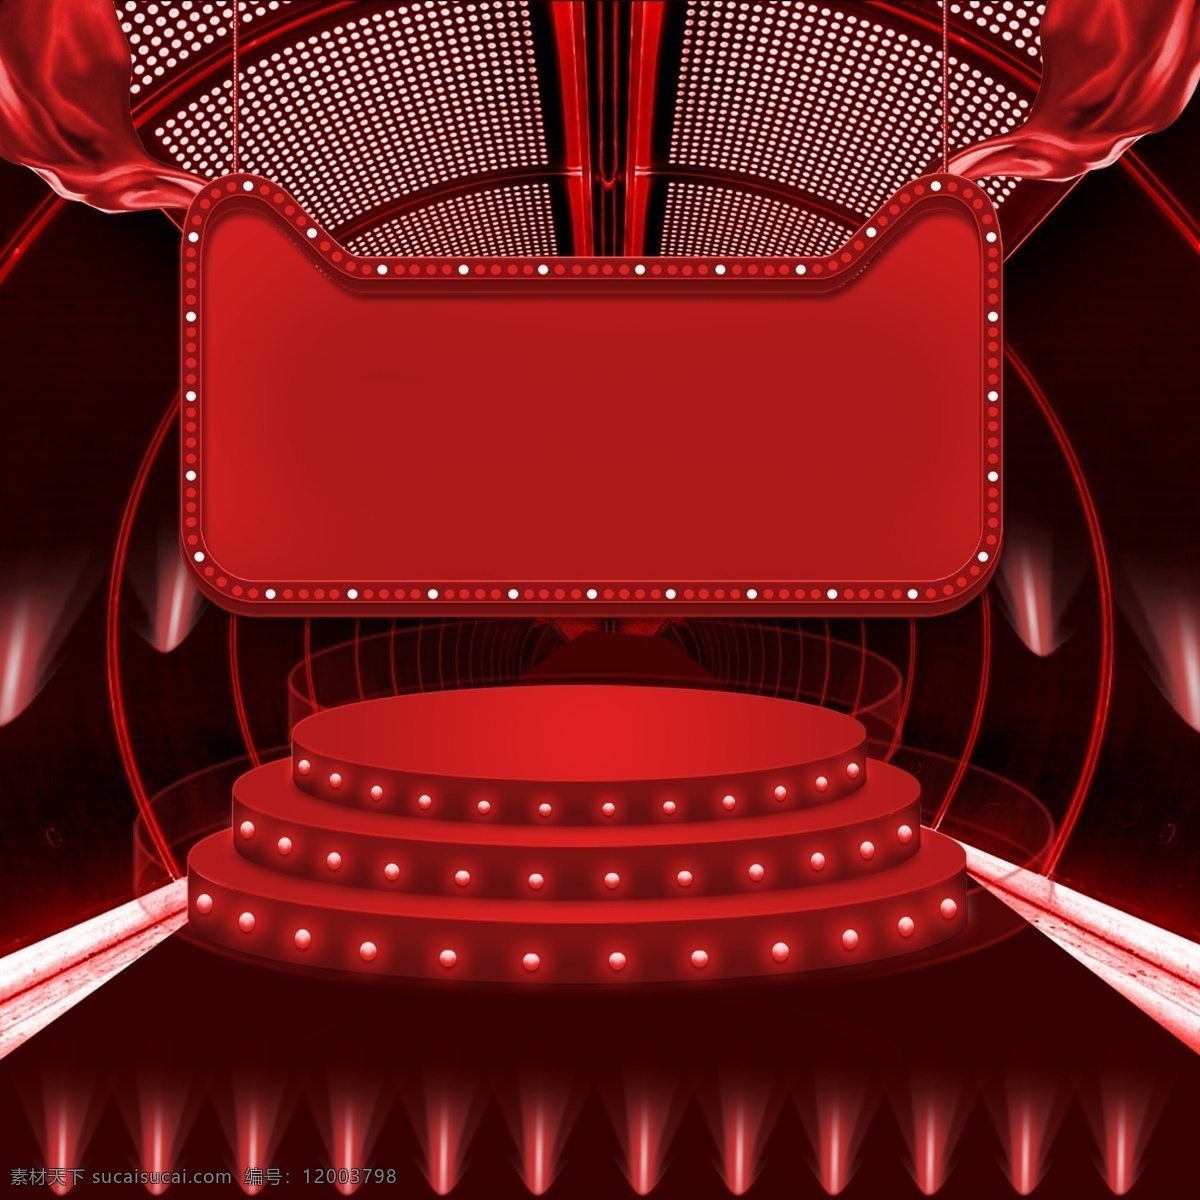 红色 立体 舞台 主 图 背景 猫头框 立体圆形舞台 活动背景 红色背景 主图背景 直通车